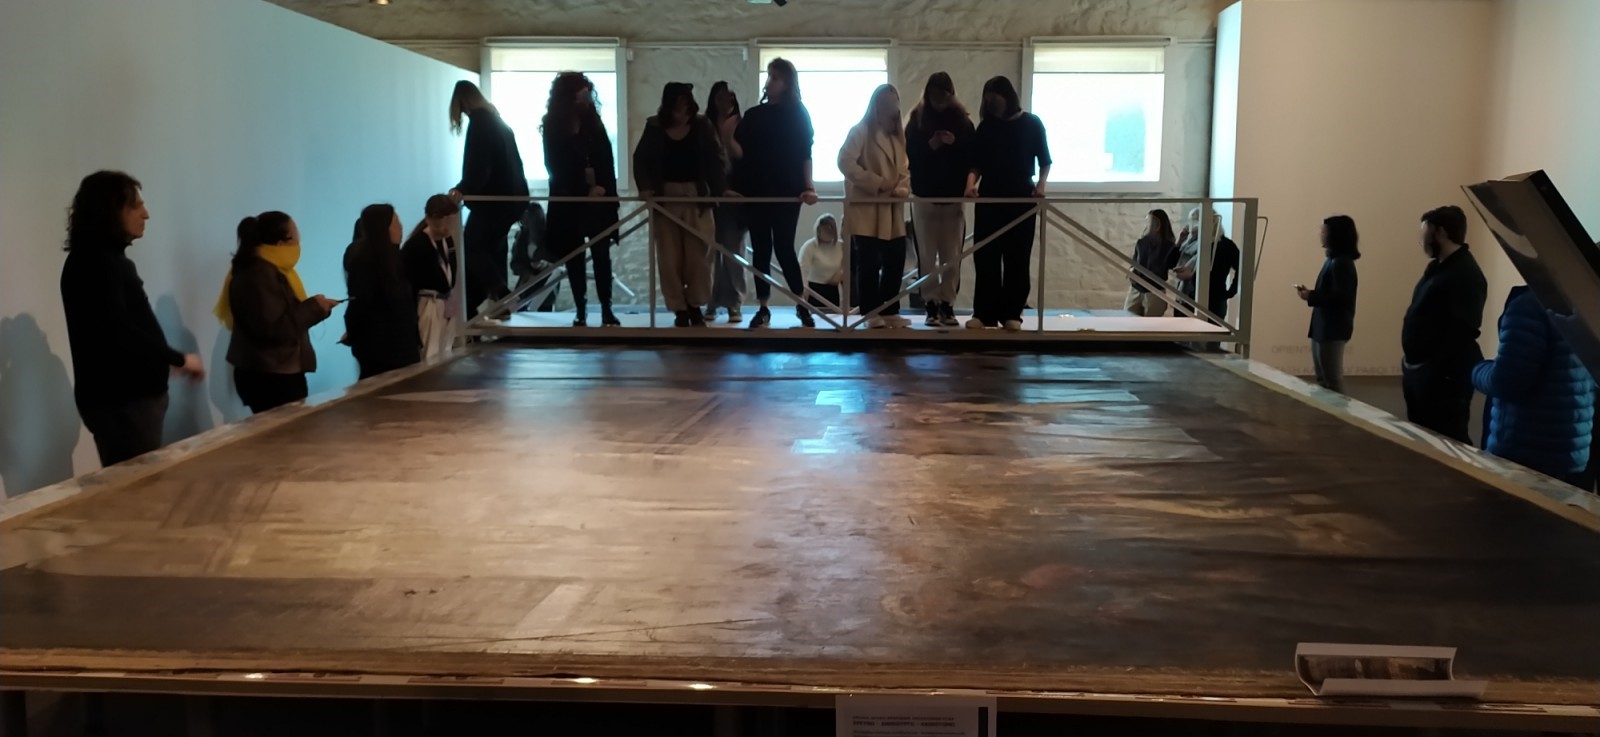 ΠΡΩΤΕΑΣ – OPEN LAB – Επίσκεψη φοιτητών του τμήματος Συντήρησης Αρχαιοτήτων και Έργων Τέχνης, του ΠΑΔΑ στο χώρο συντήρησης/ Απρίλιος 2023 – Εθνική Γλυπτοθήκη